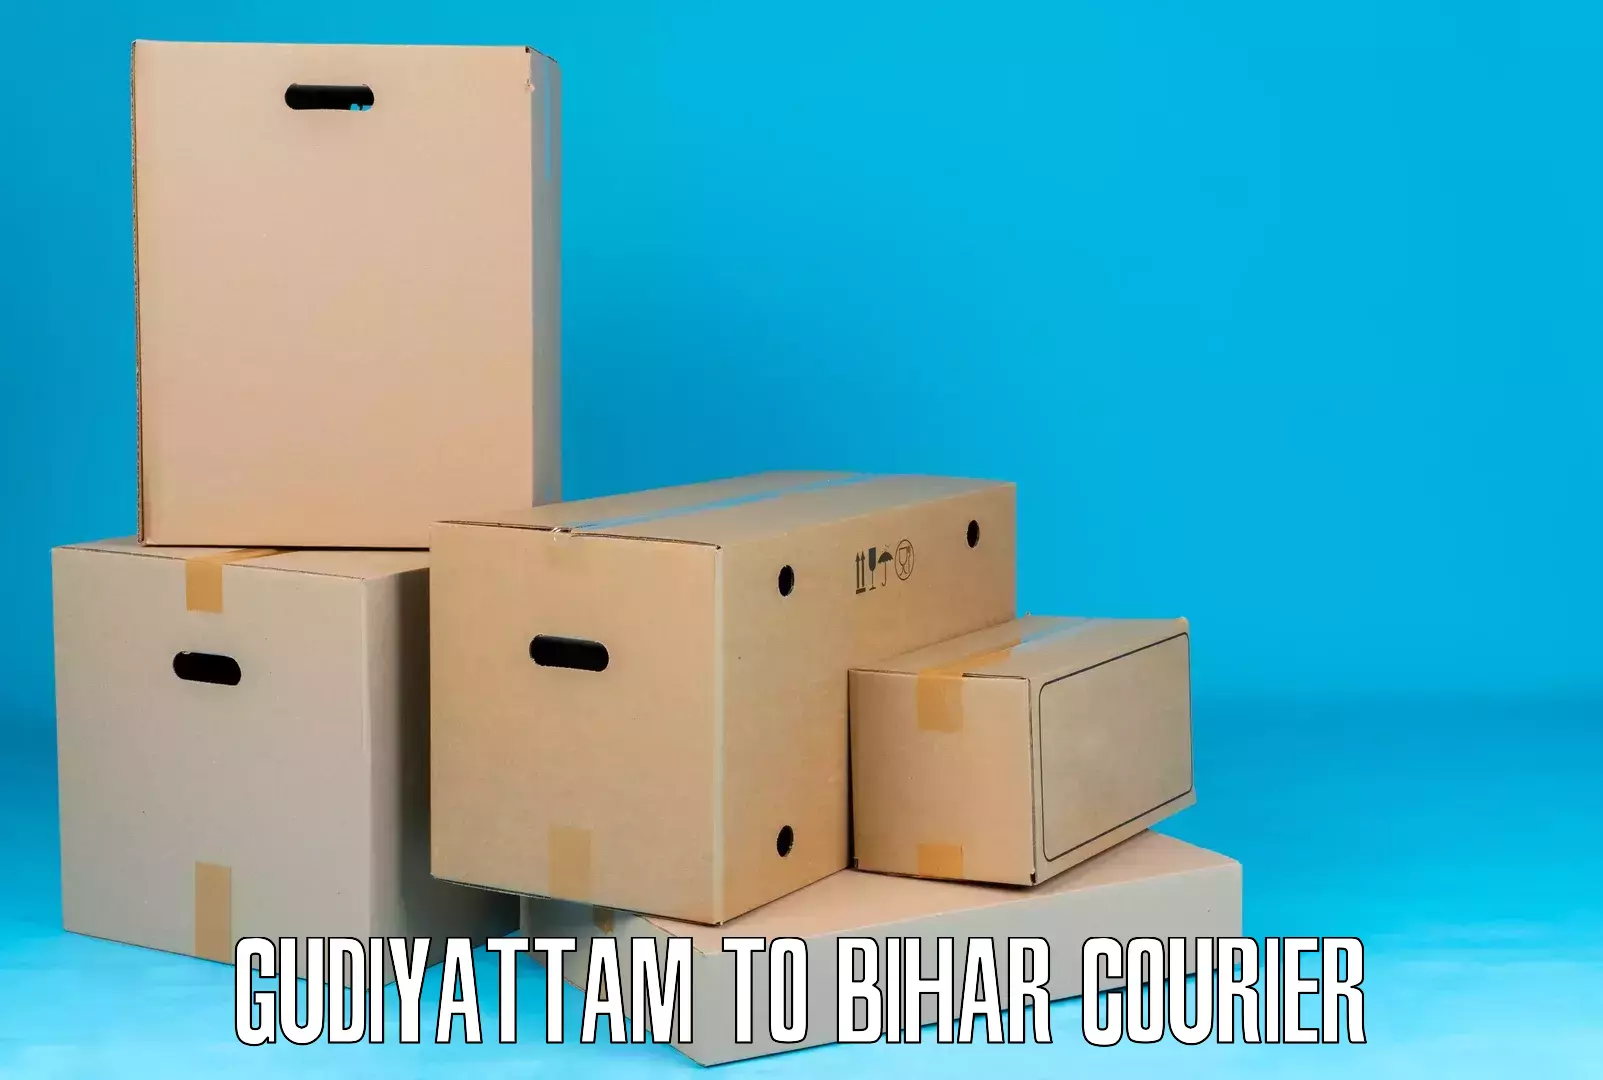 High-capacity parcel service Gudiyattam to Sasaram